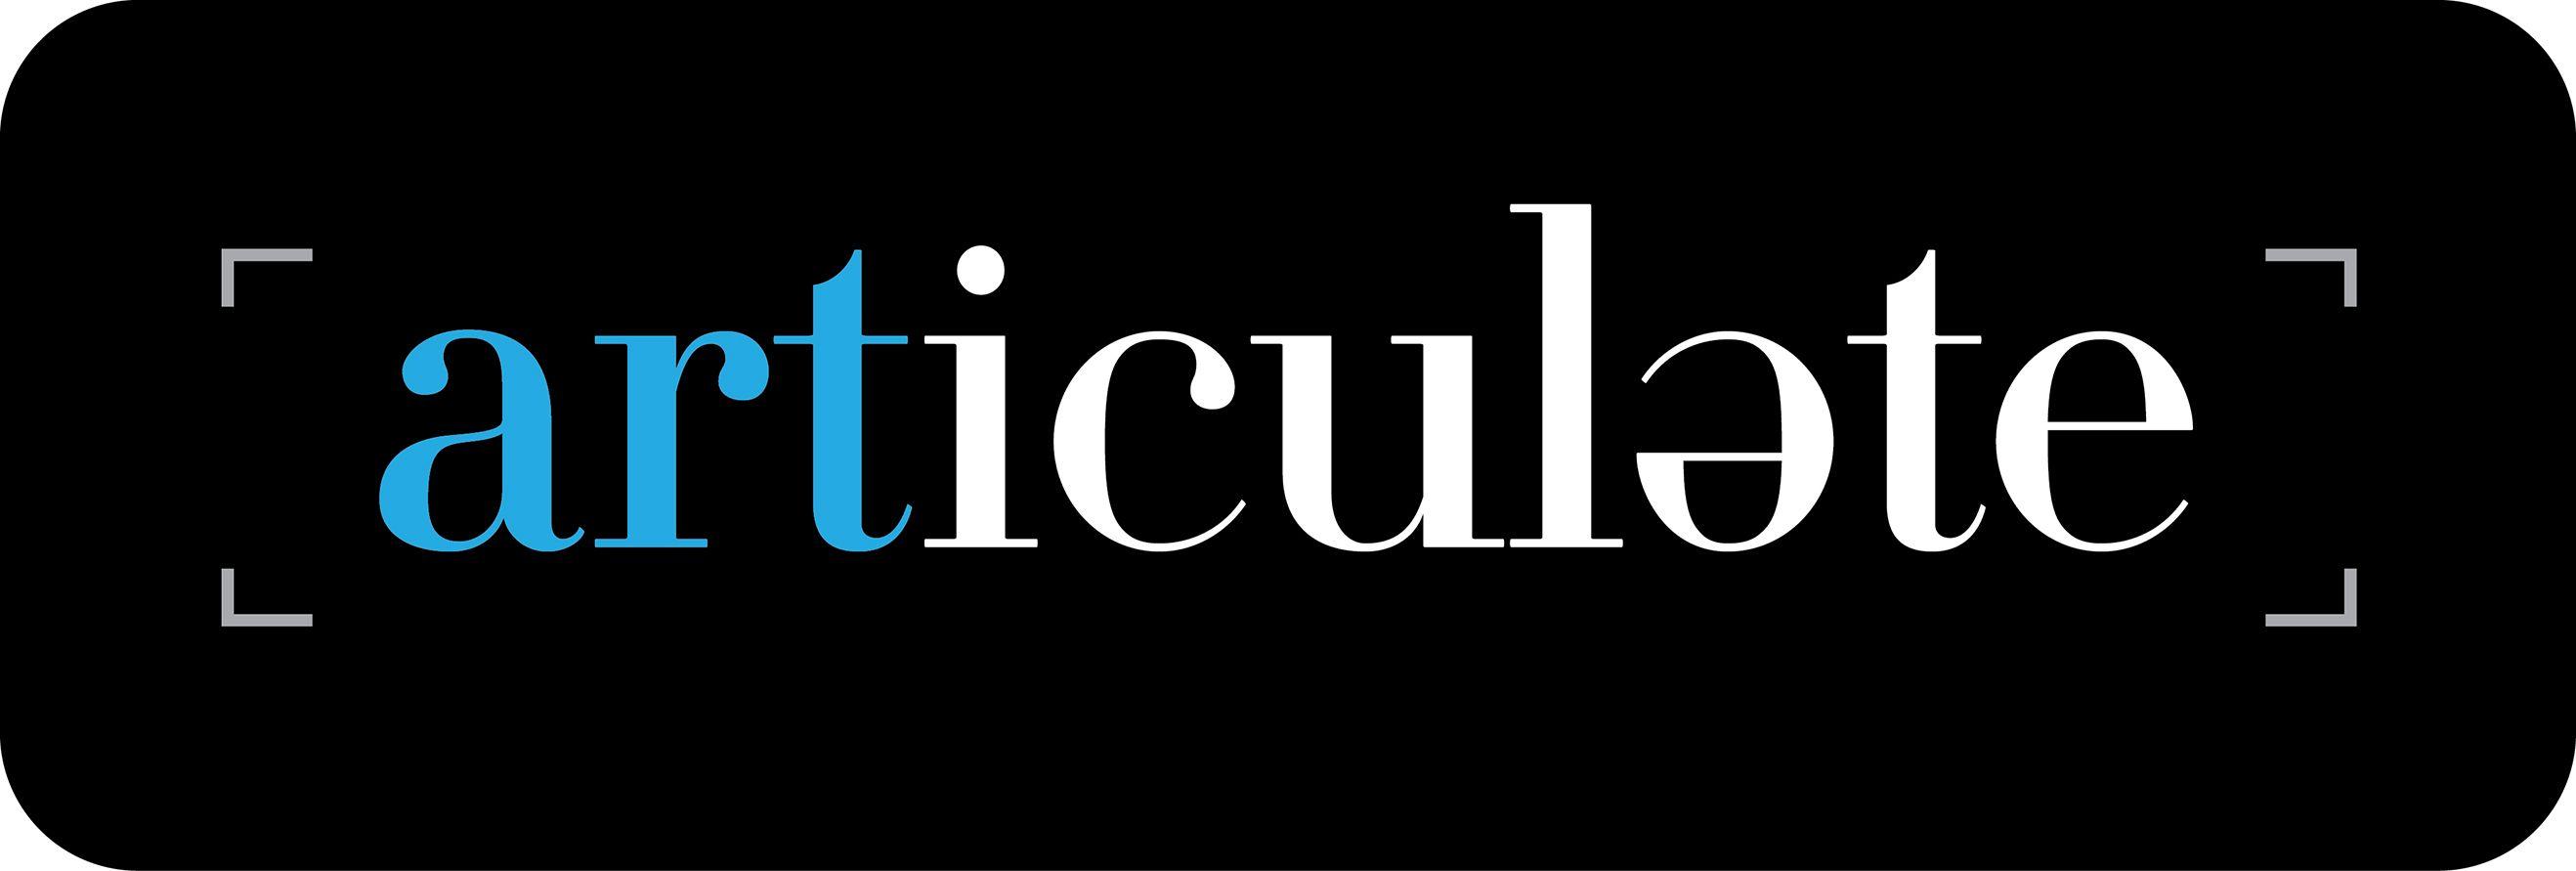 Articulate Logo - Articulate — Design Elements